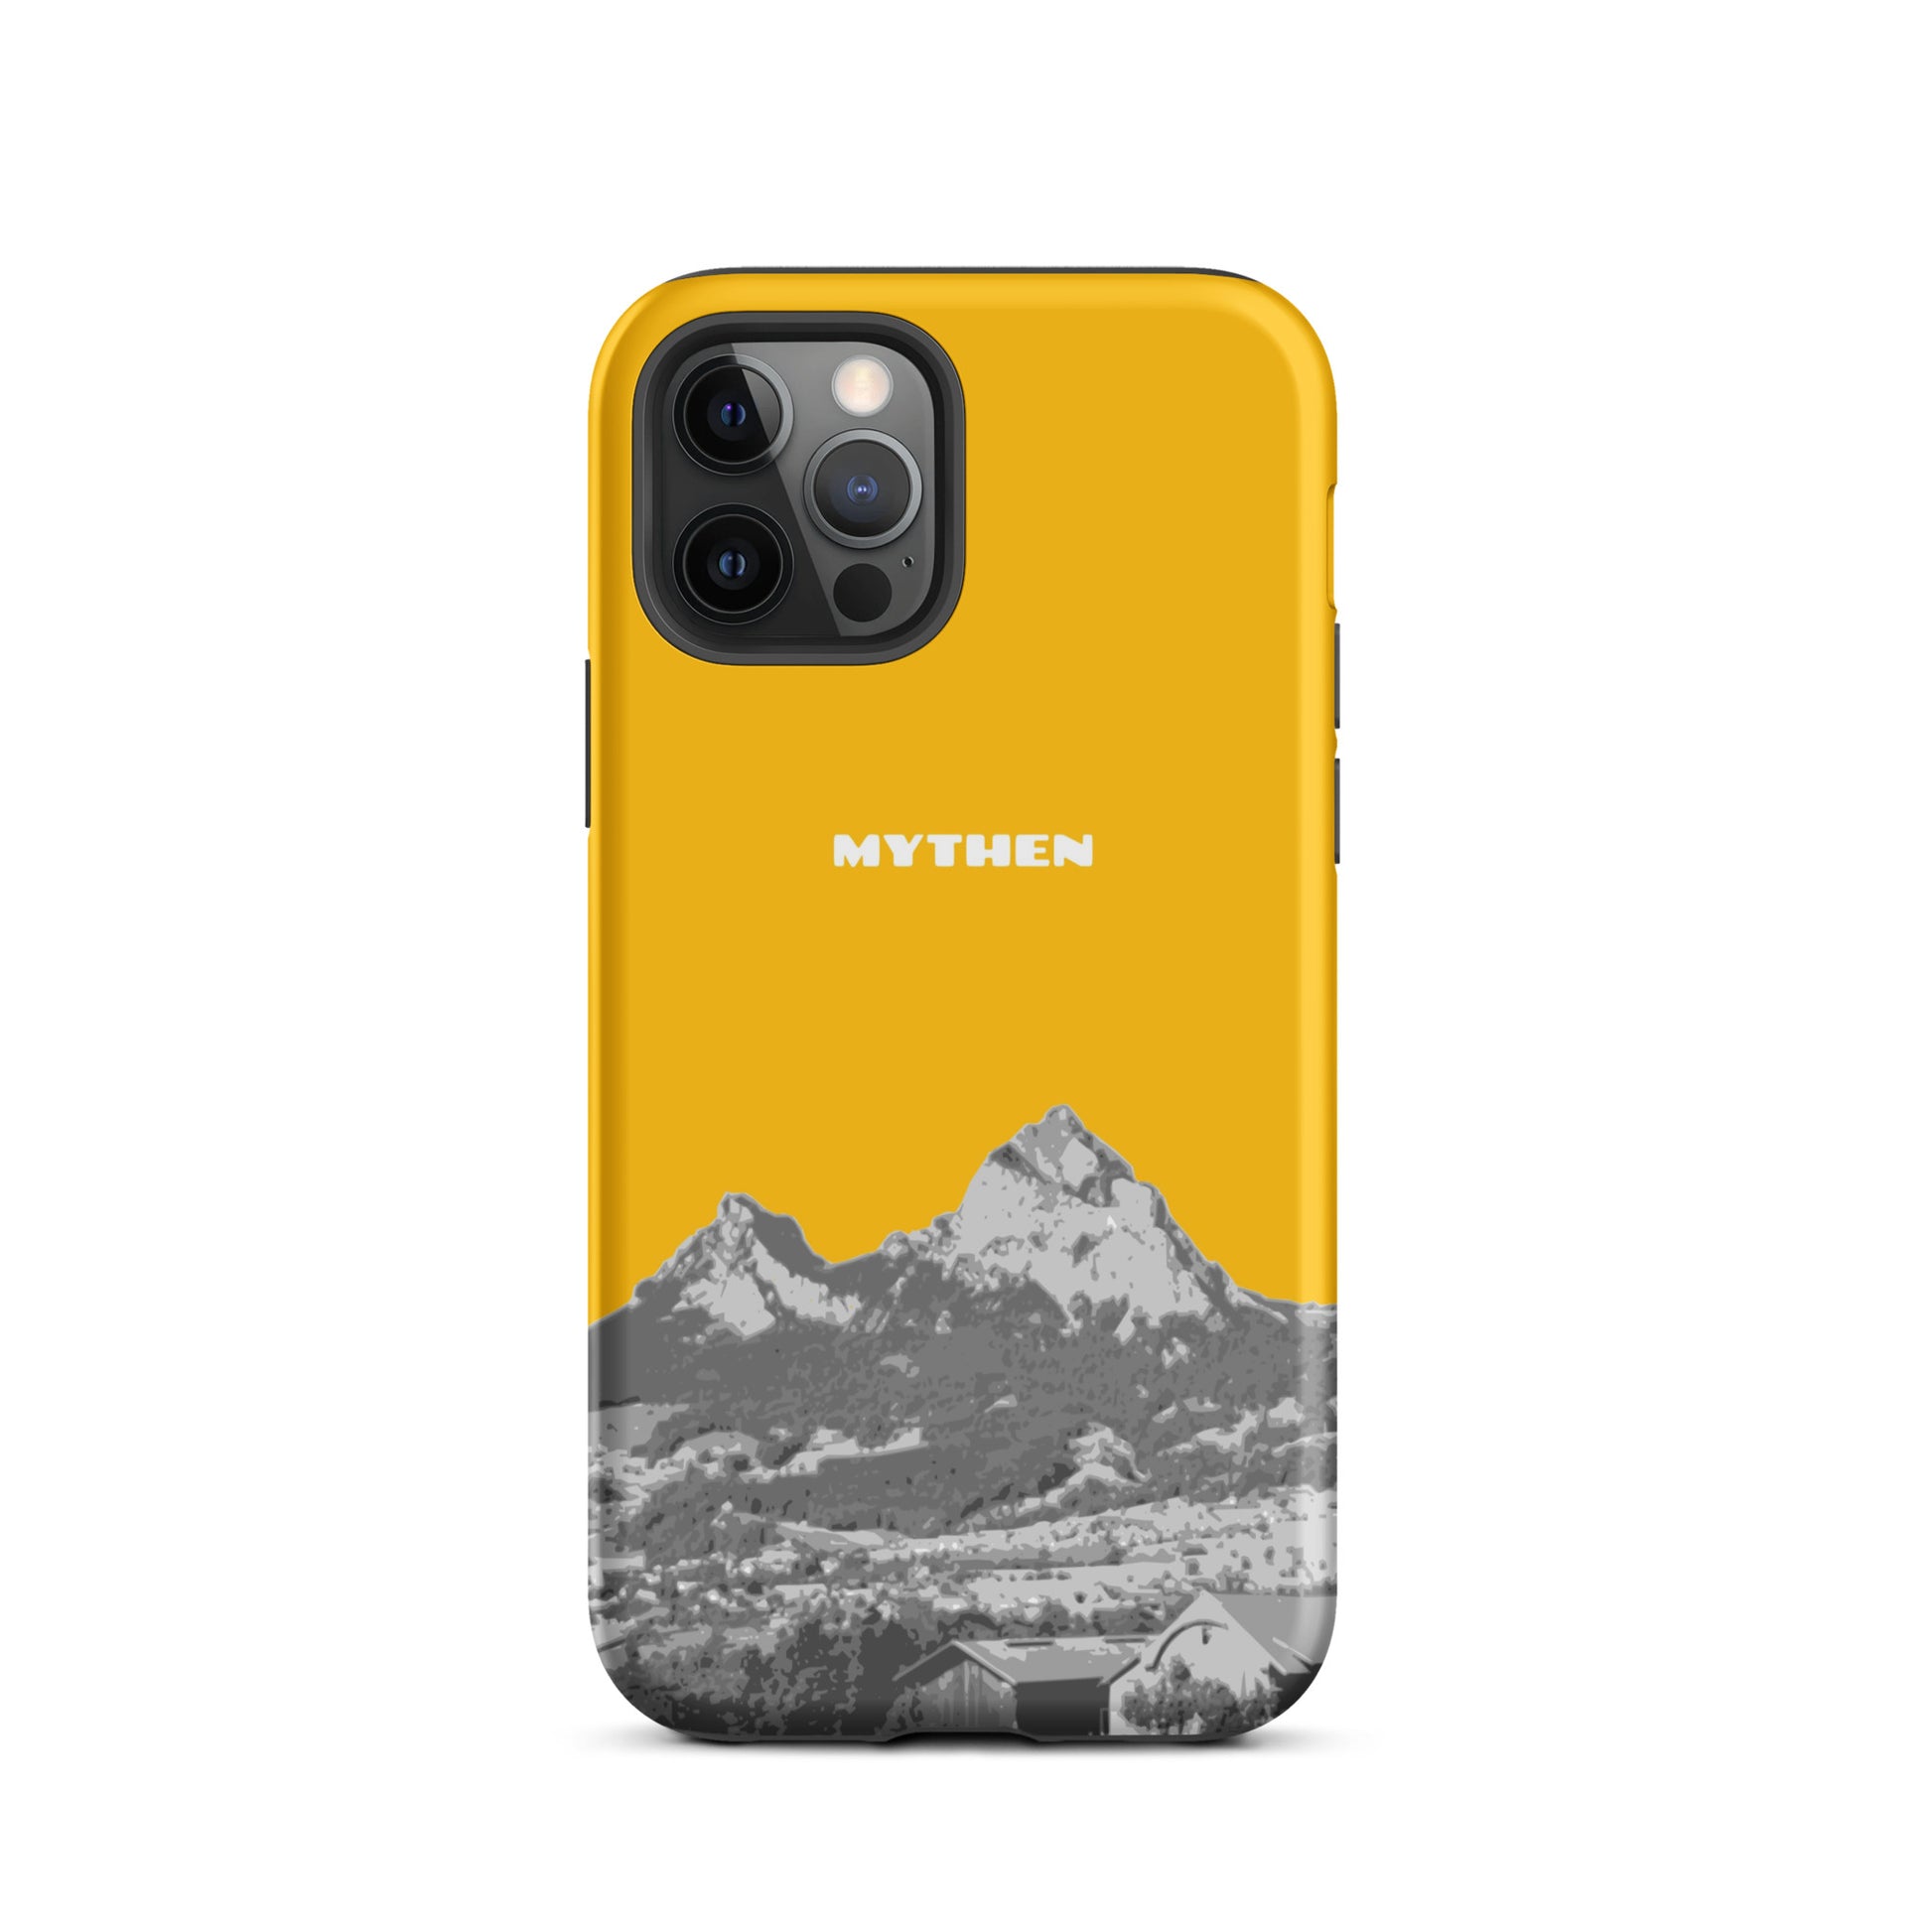 Hülle für das iPhone 12 Pro von Apple in der Farbe Goldgelb, dass den Grossen Mythen und den Kleinen Mythen bei Schwyz zeigt. 